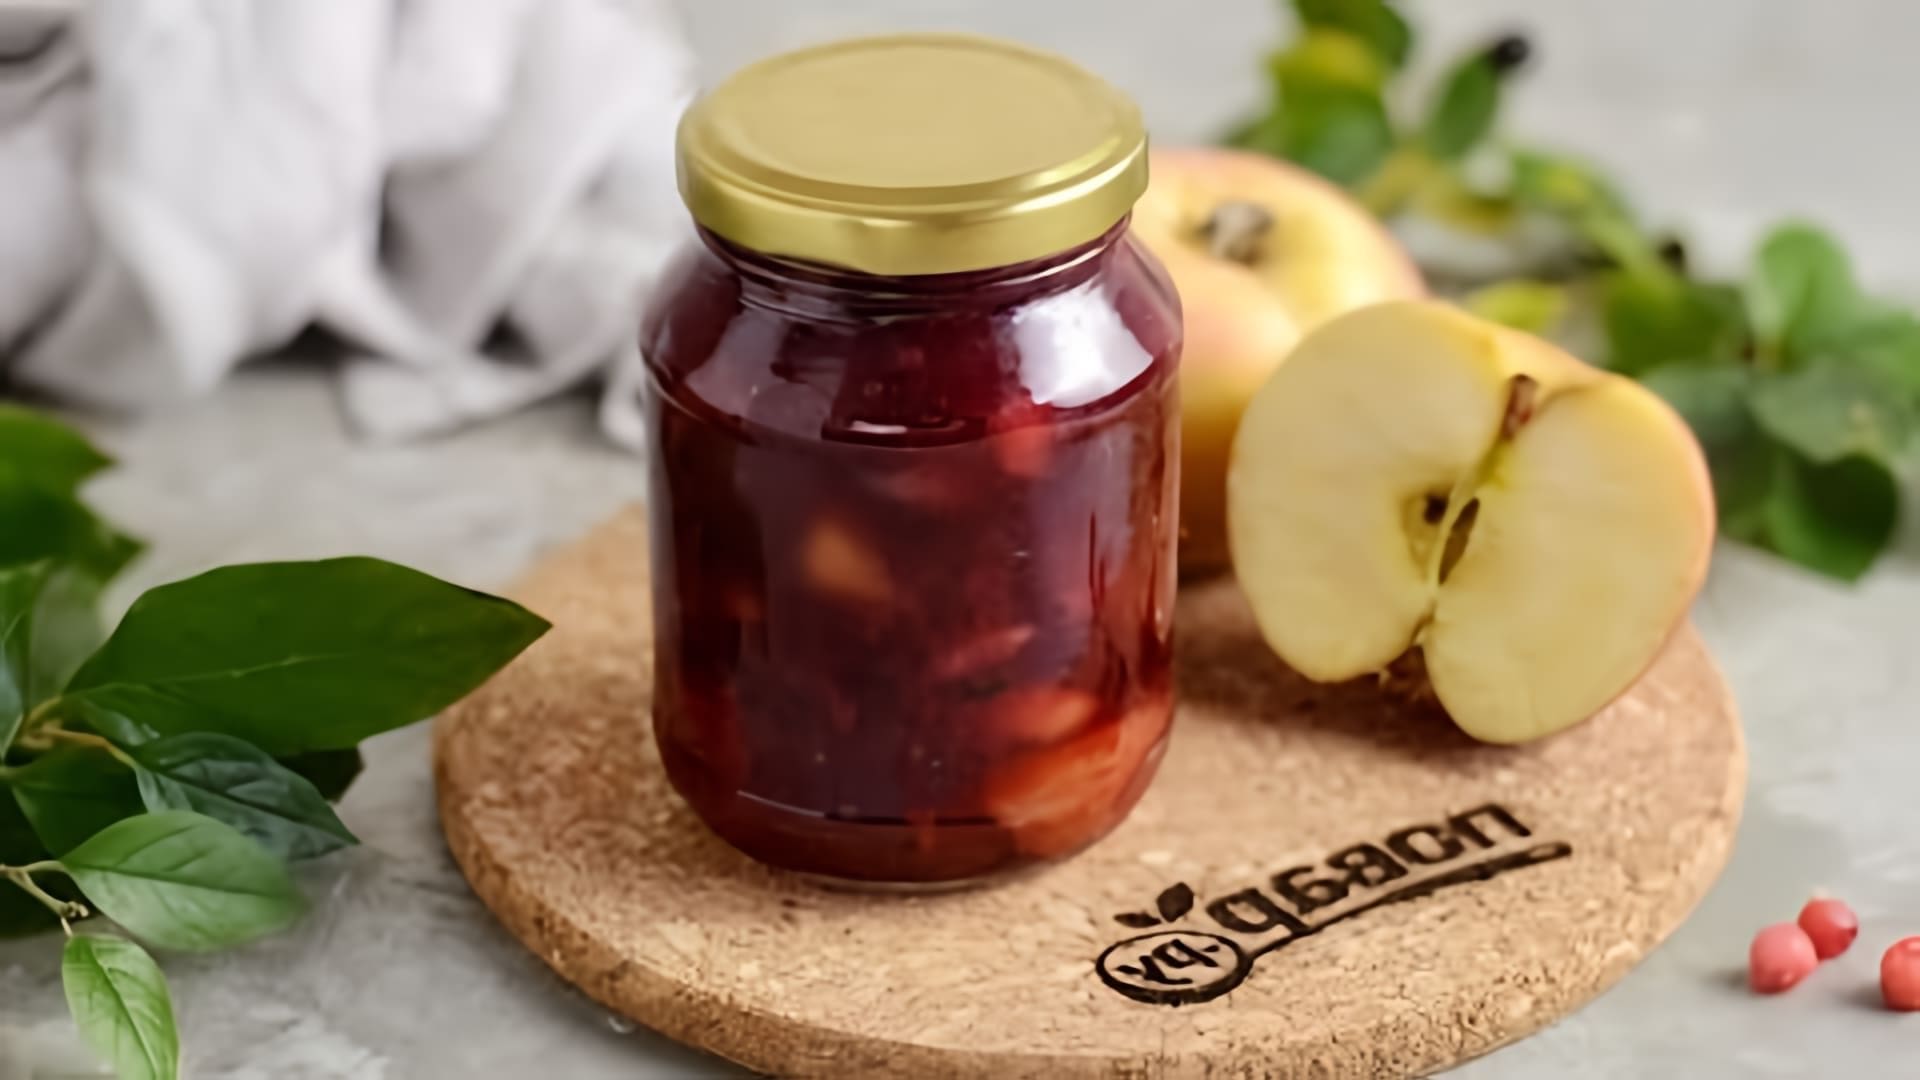 В этом видео демонстрируется рецепт приготовления варенья из красной смородины с яблоками